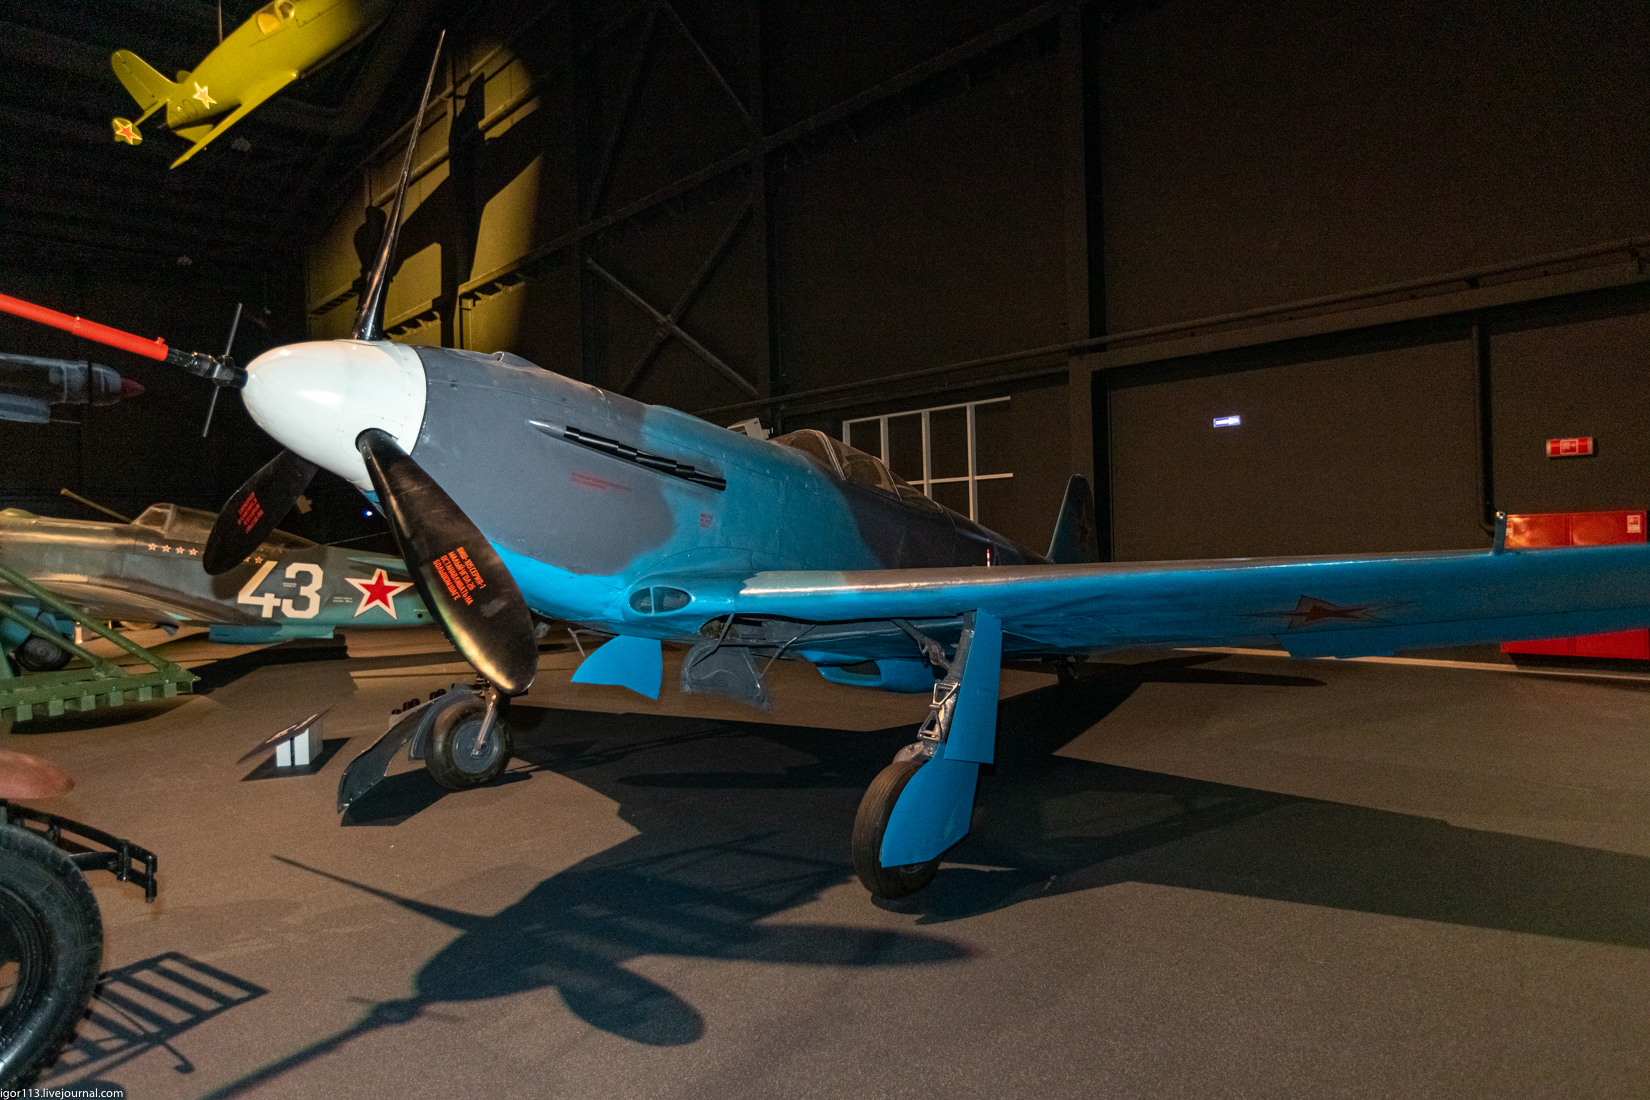 Музей техники в Верхней Пышме ч2: истребитель Як-3. 